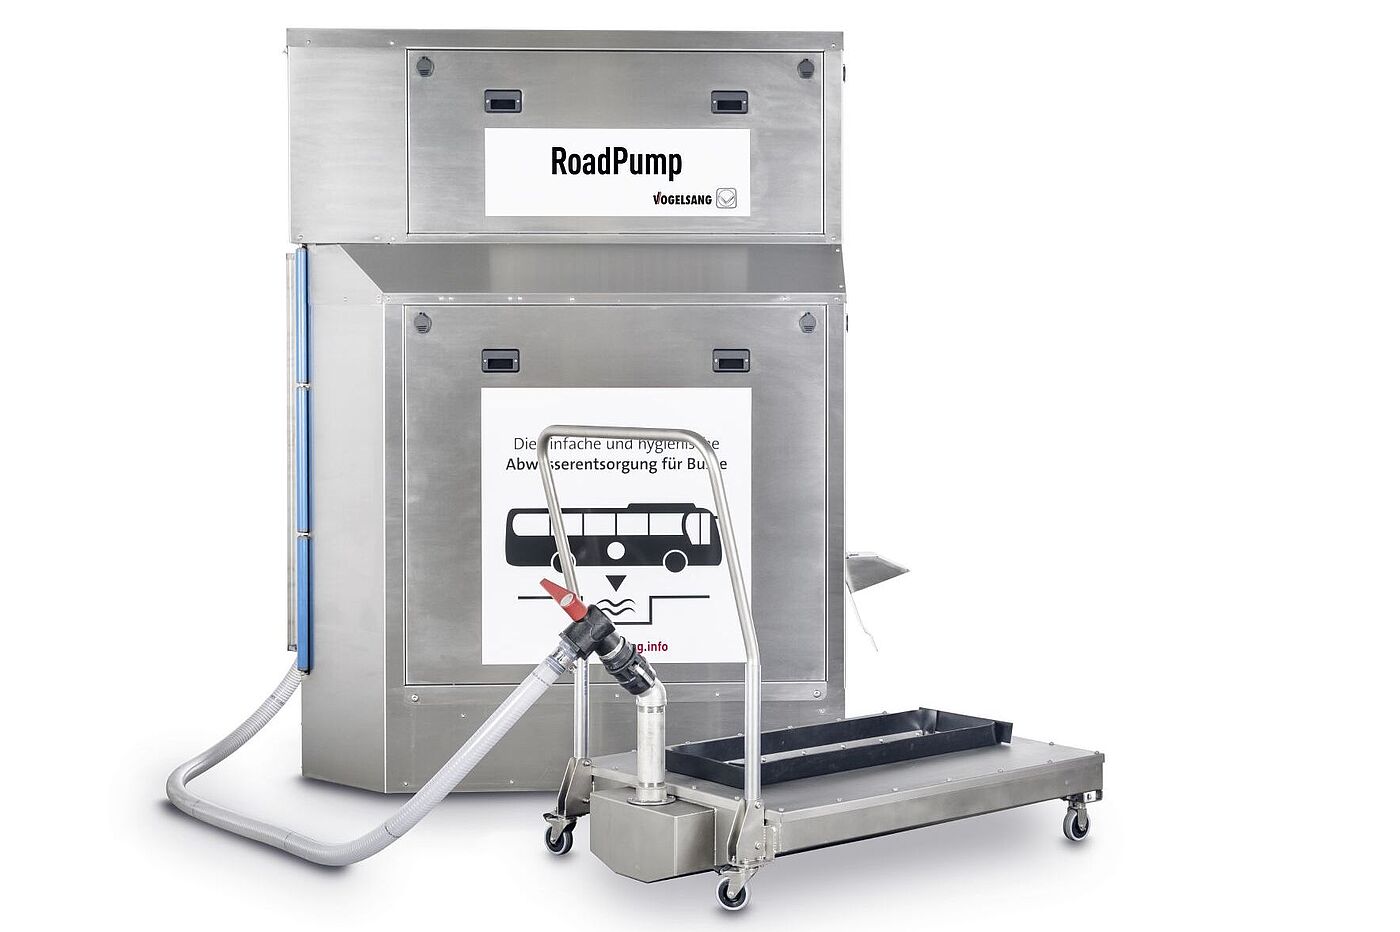 RoadPump Plus, das Vogelsang-System zur Frischwasserversorgung und Abwasserentsorgung aus Bordtoiletten